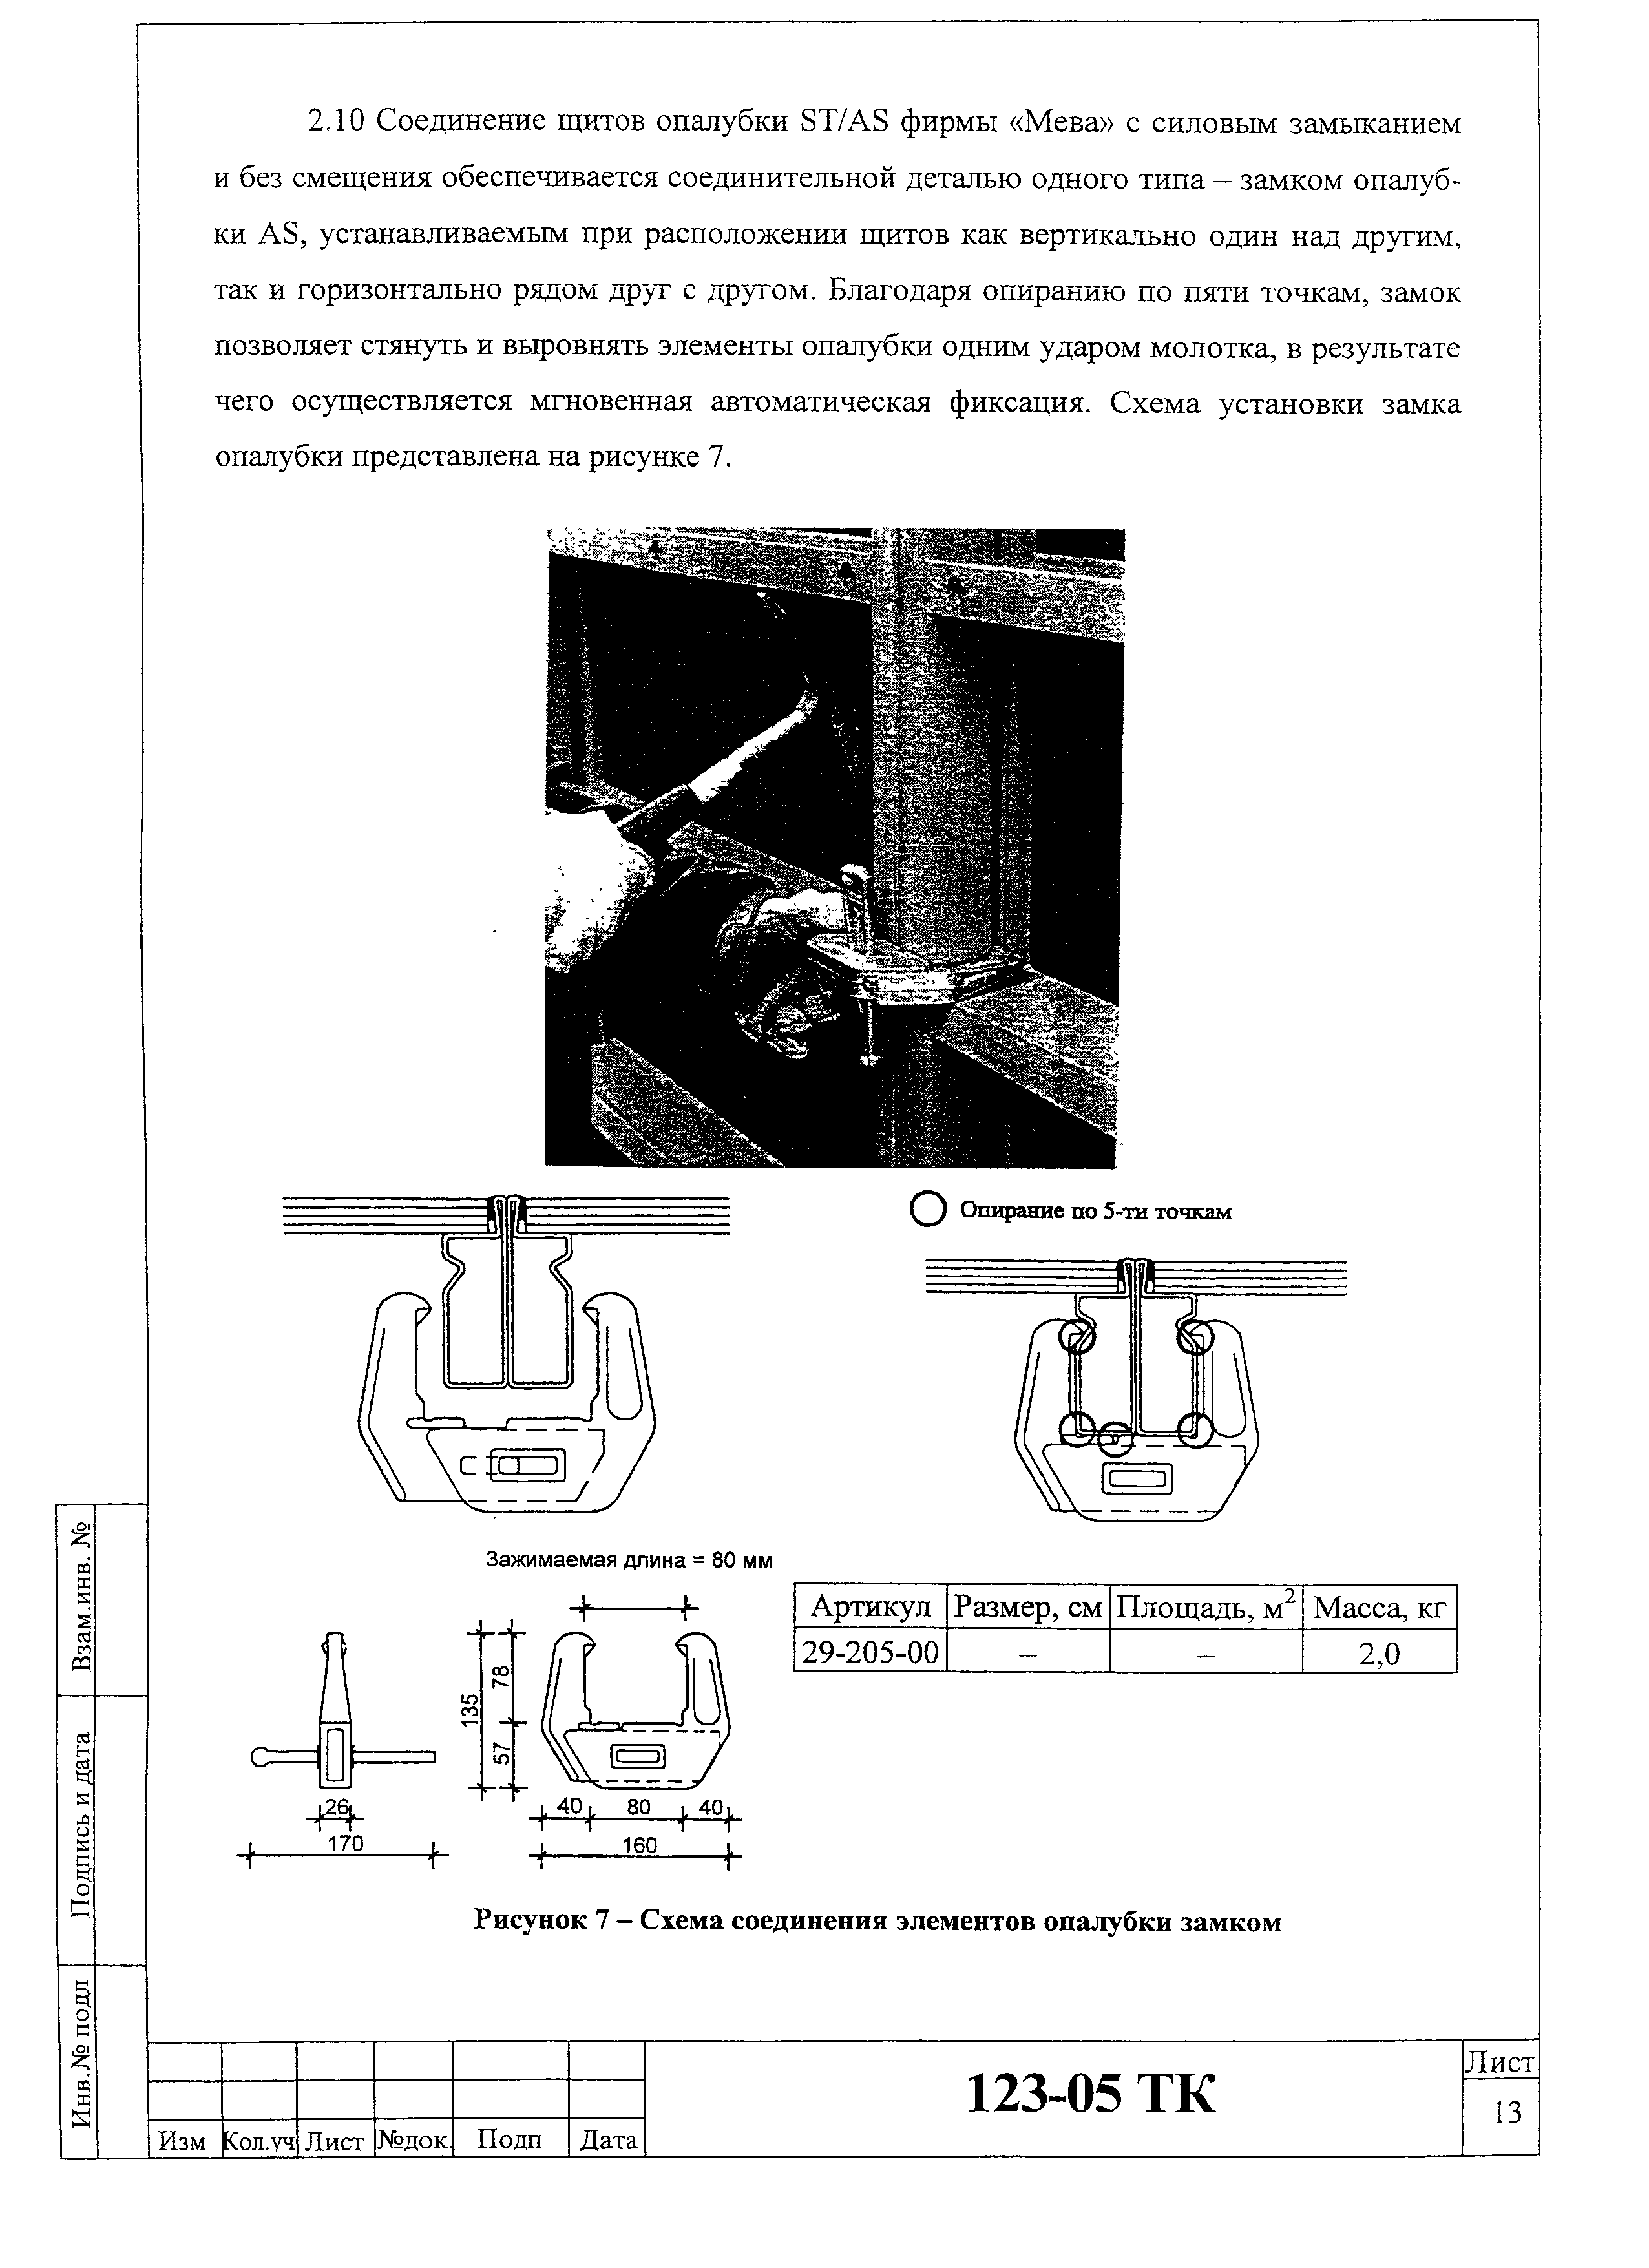 Технологическая карта 123-05 ТК